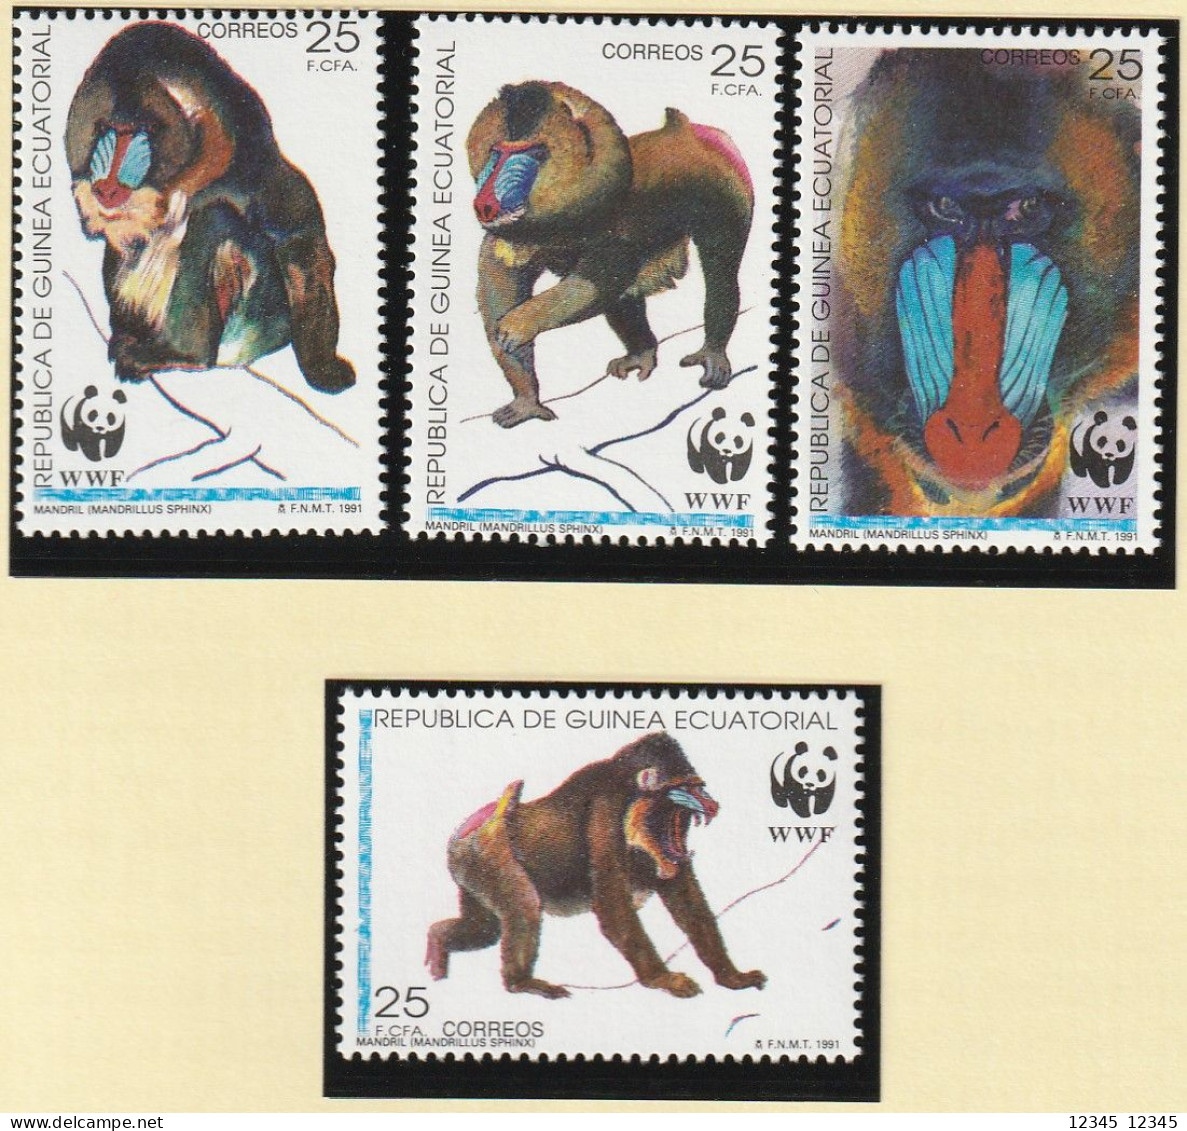 Equatoriaal Guinea 1991, Postfris MNH, WWF, Mandrill - Equatorial Guinea